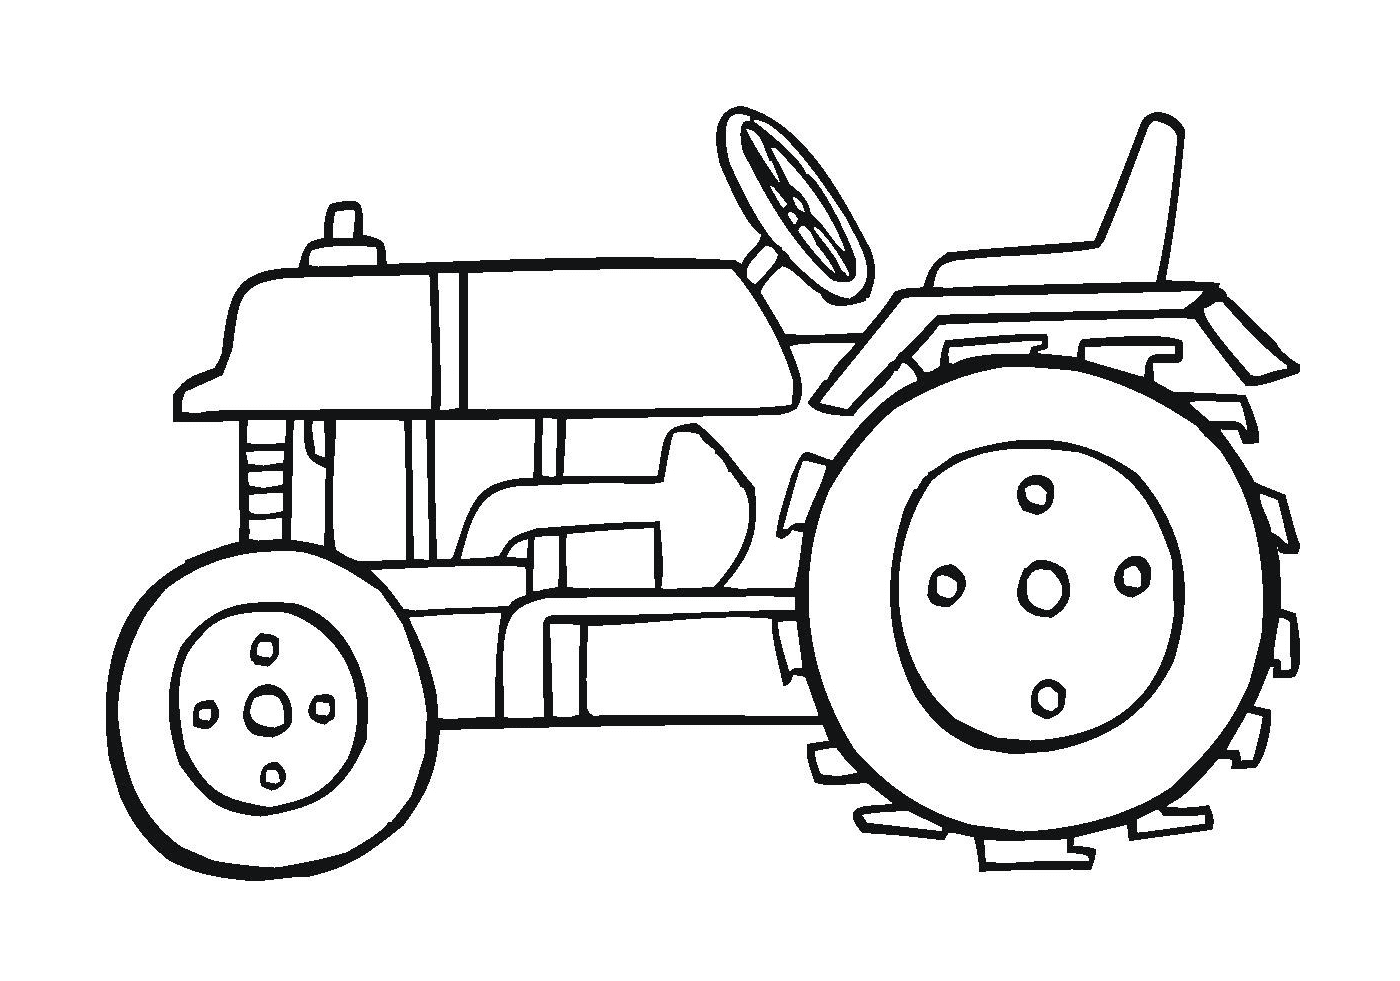  Tractor poderoso, máquina agrícola eficiente 